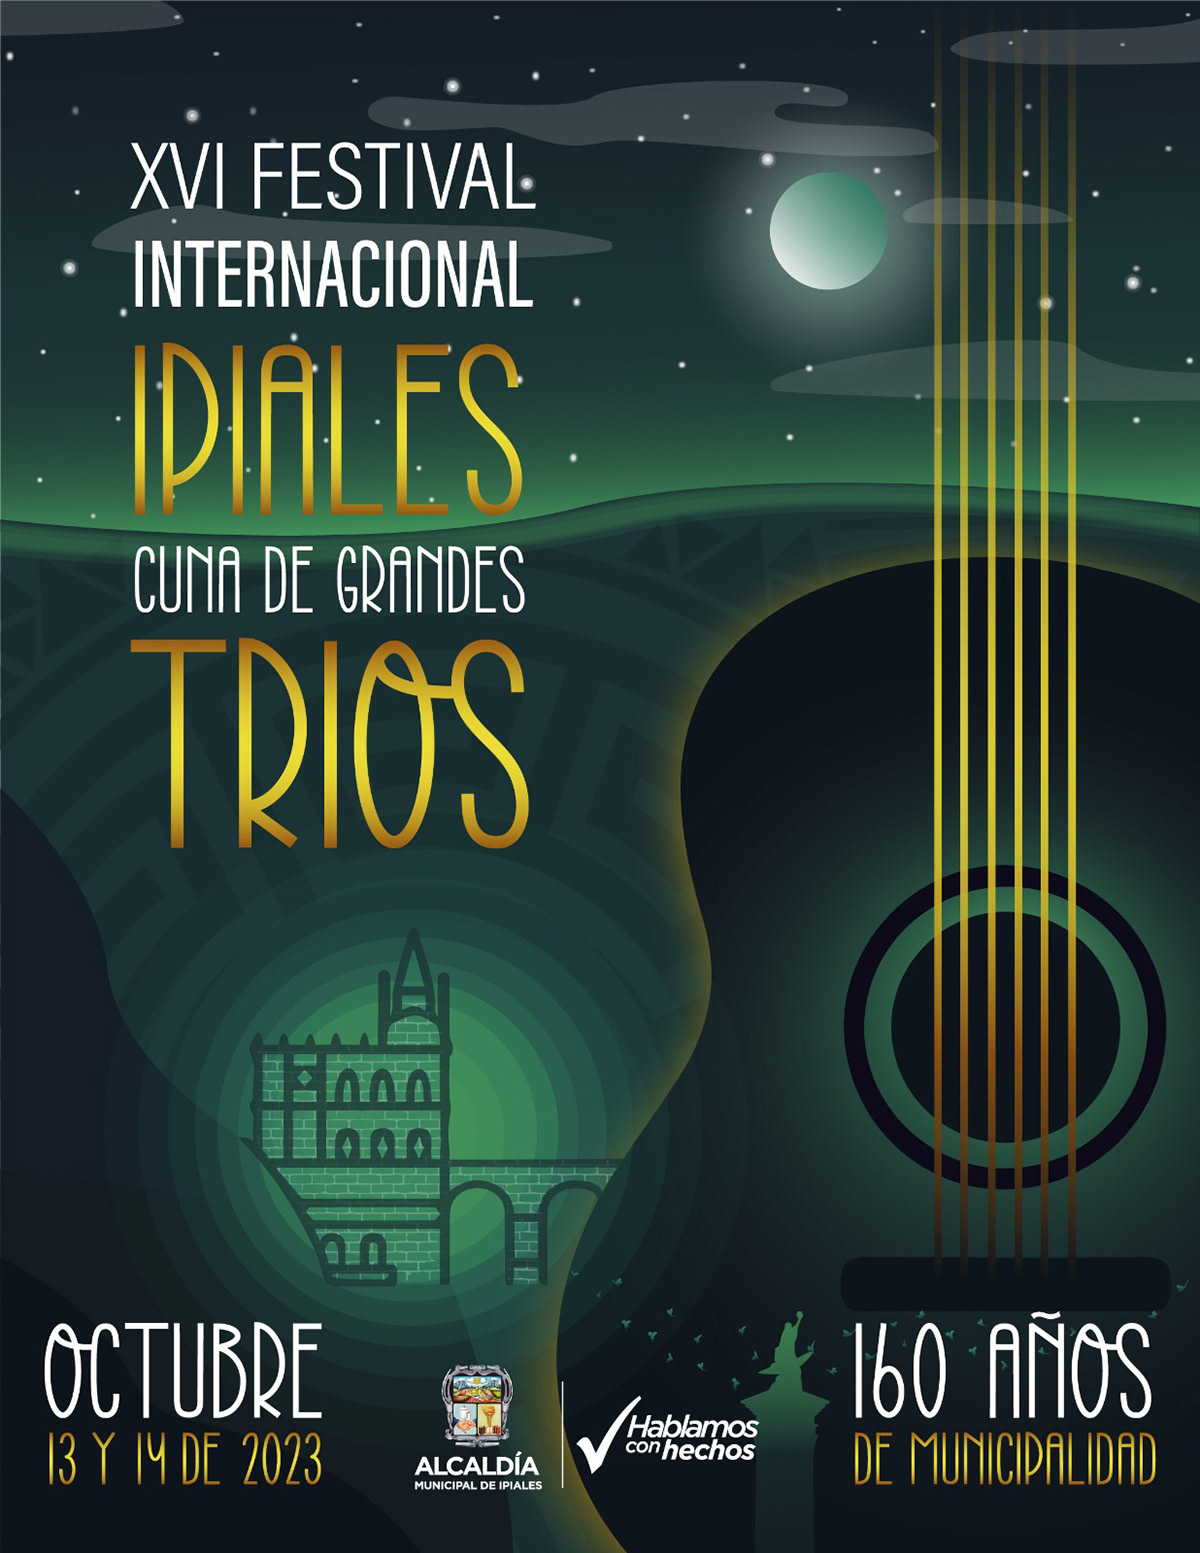 poster afiche flyer Flyer Design regional nacional internacional Ipiales colombia trios